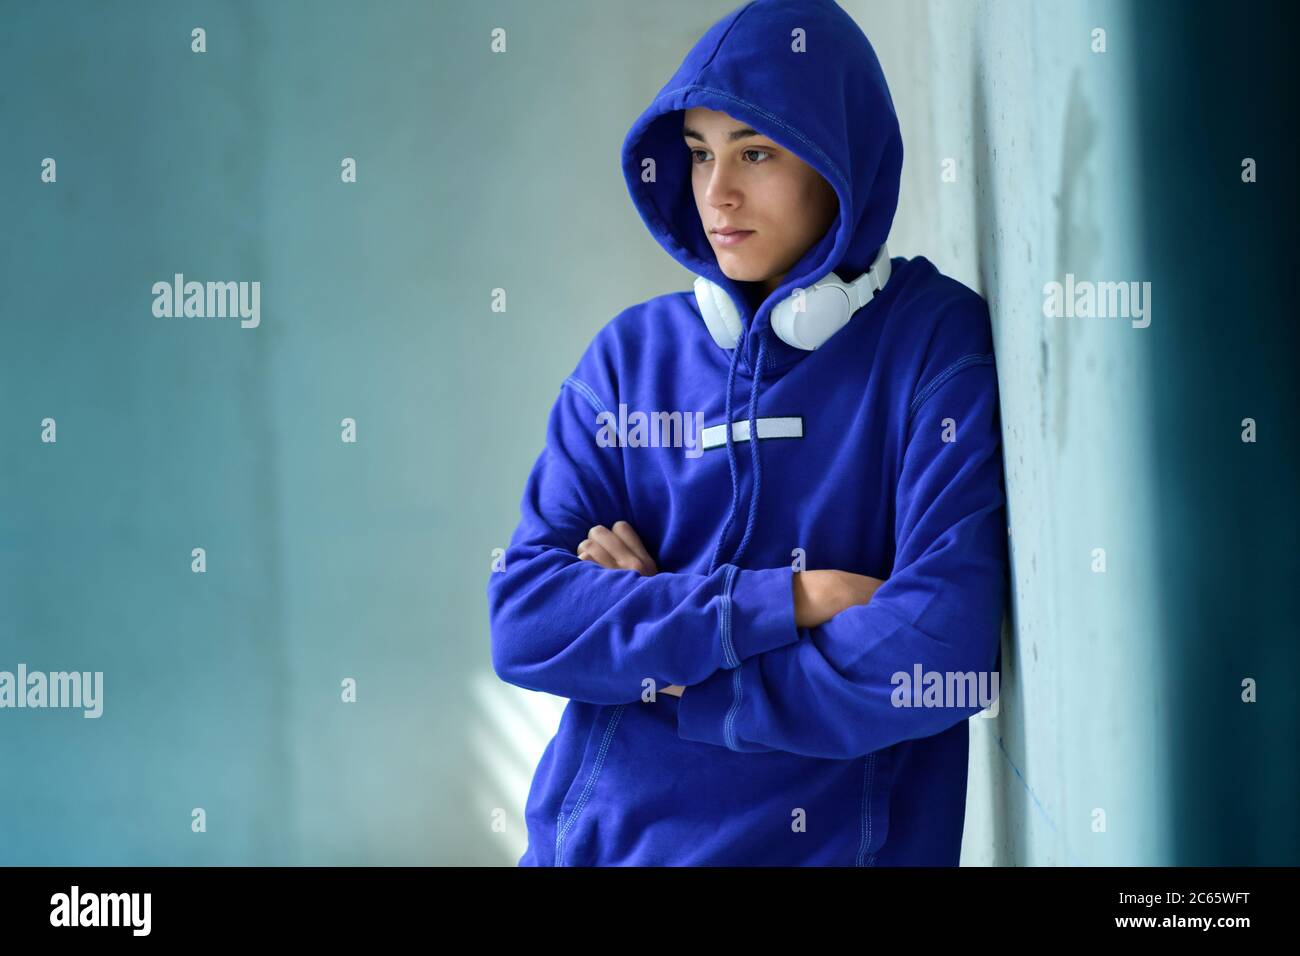 Nachdenklicher ernsthafter Teenager-Junge in einem blauen Hoodie, der mit gefalteten Armen auf einer blau getönten Wand in einem Sonnenstrahl steht und mit einem Stift zur Seite schaut Stockfoto